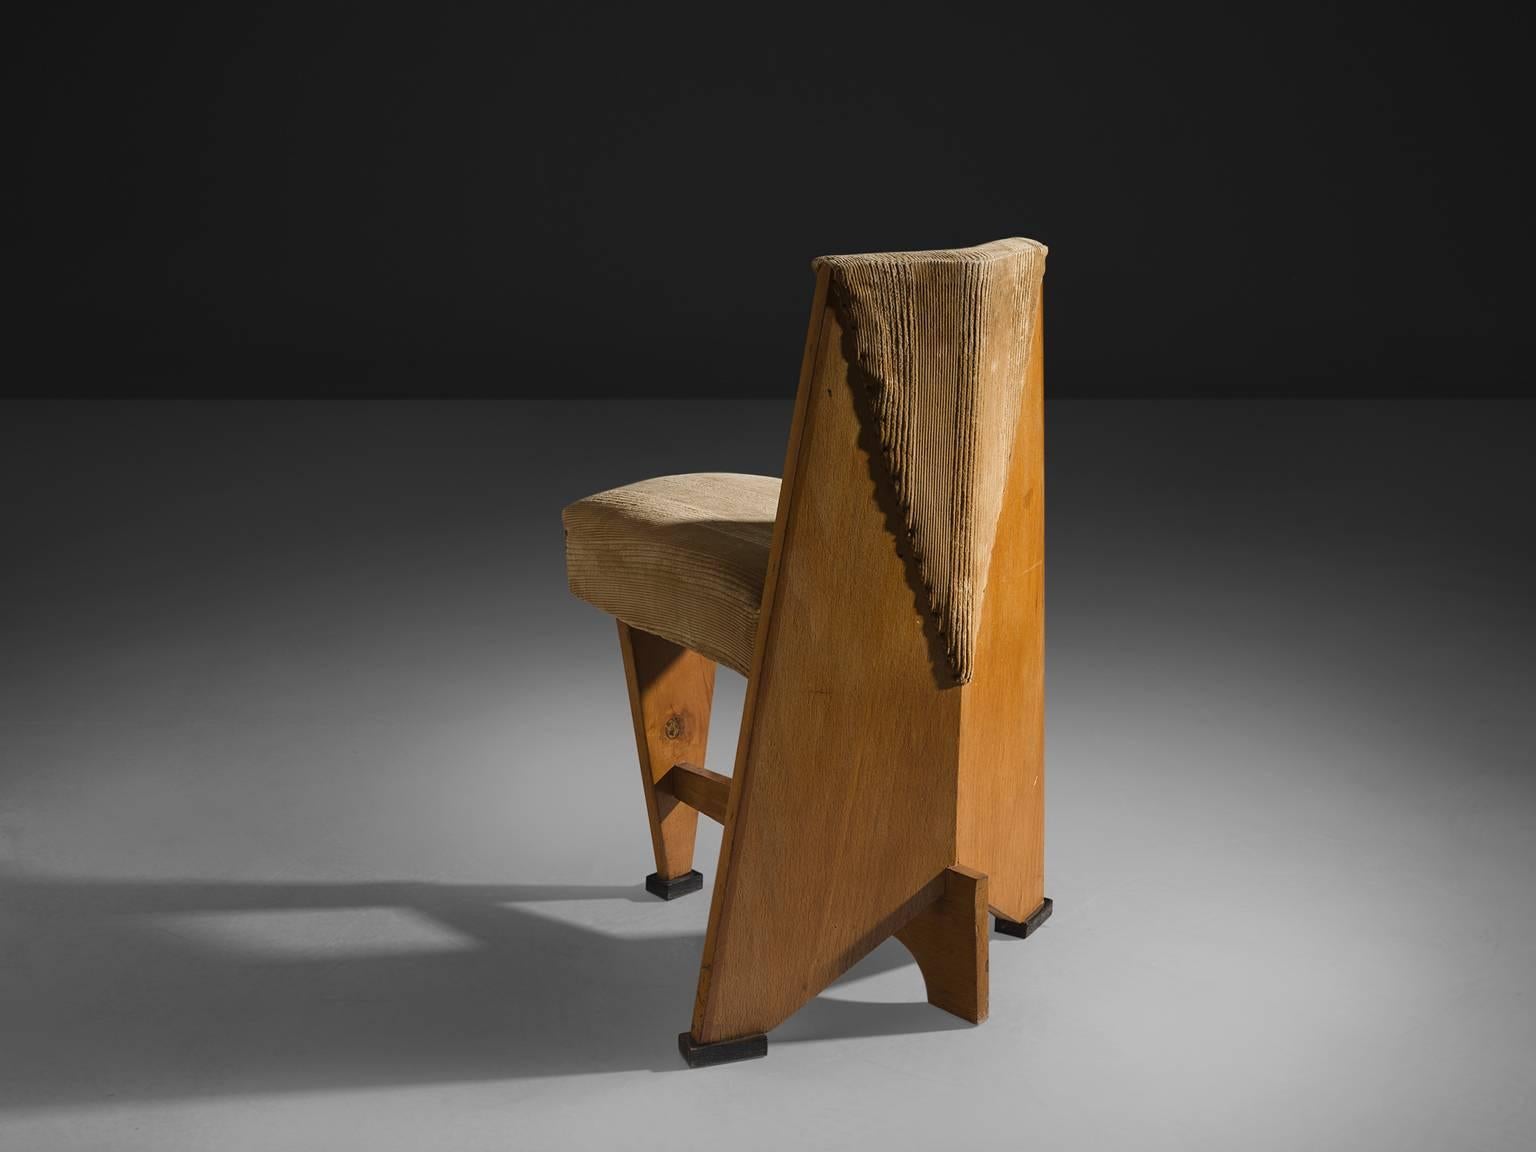 Early 20th Century Dutch Art Deco Chair by Laurens Groen, circa 1928